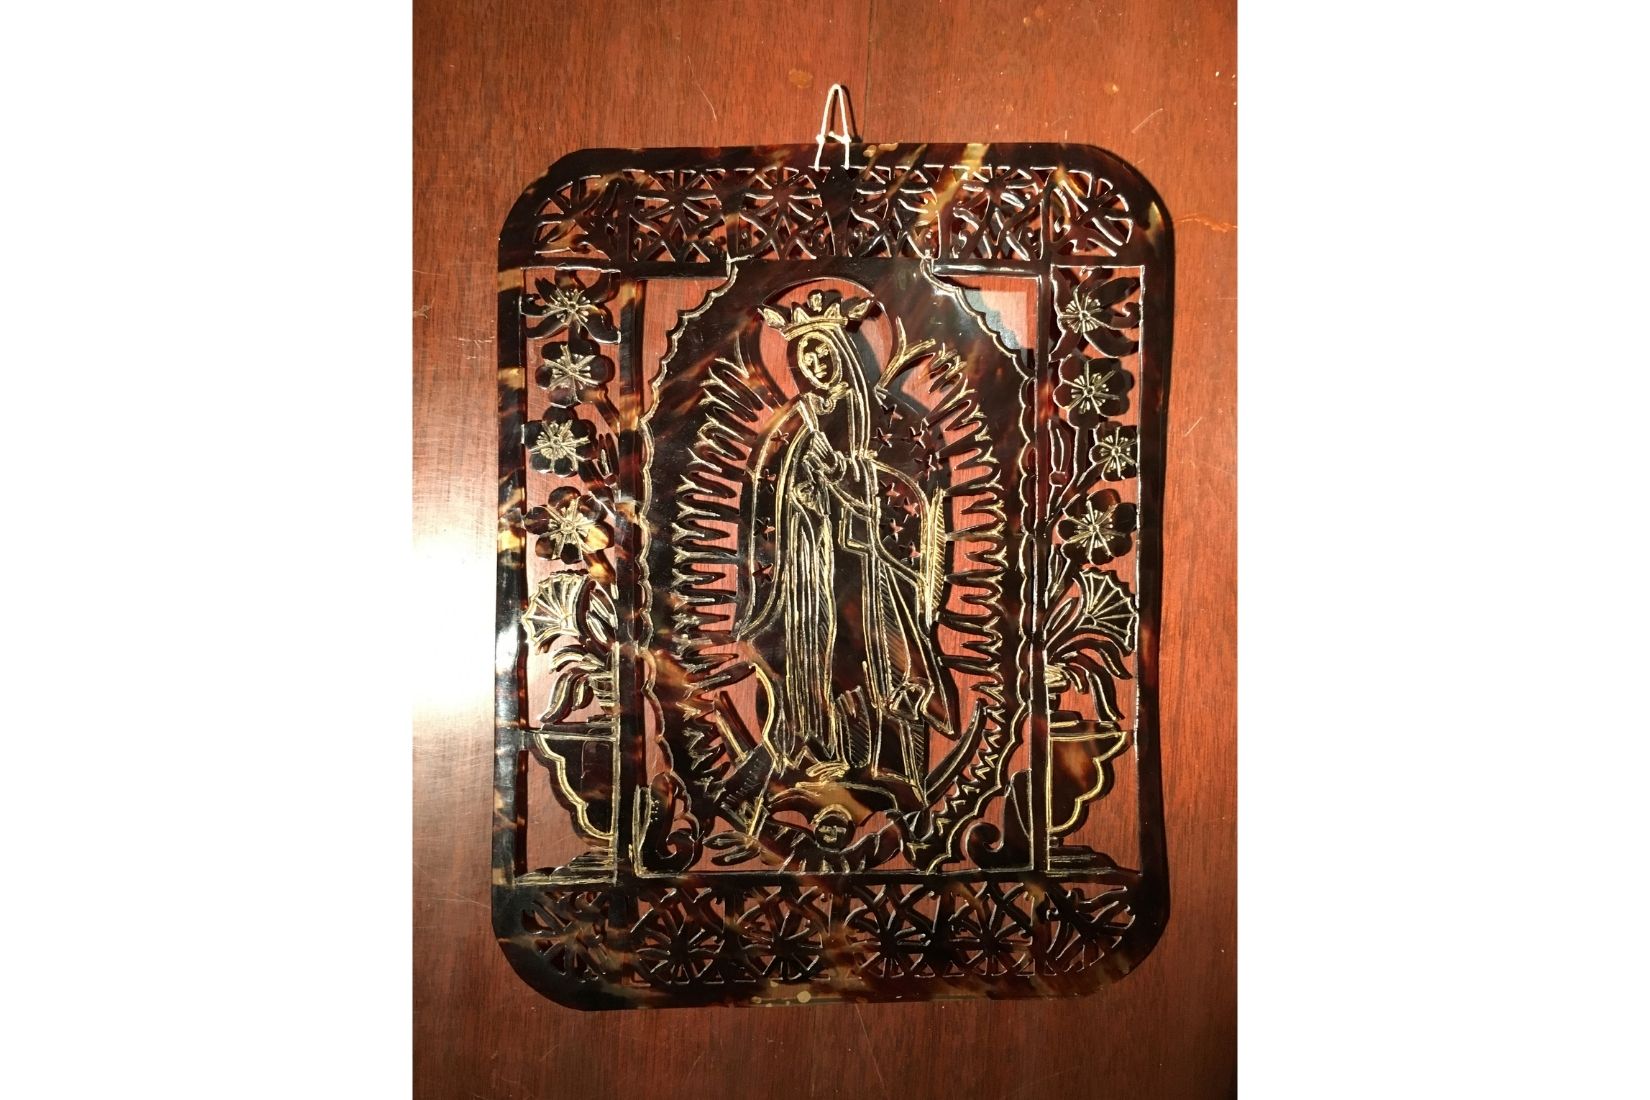 Virgen de Guadalupe en filigrana de cuerno de toro calado. Artesano desconocido. Campeche. Col. Francisco Pérez de Salazar.